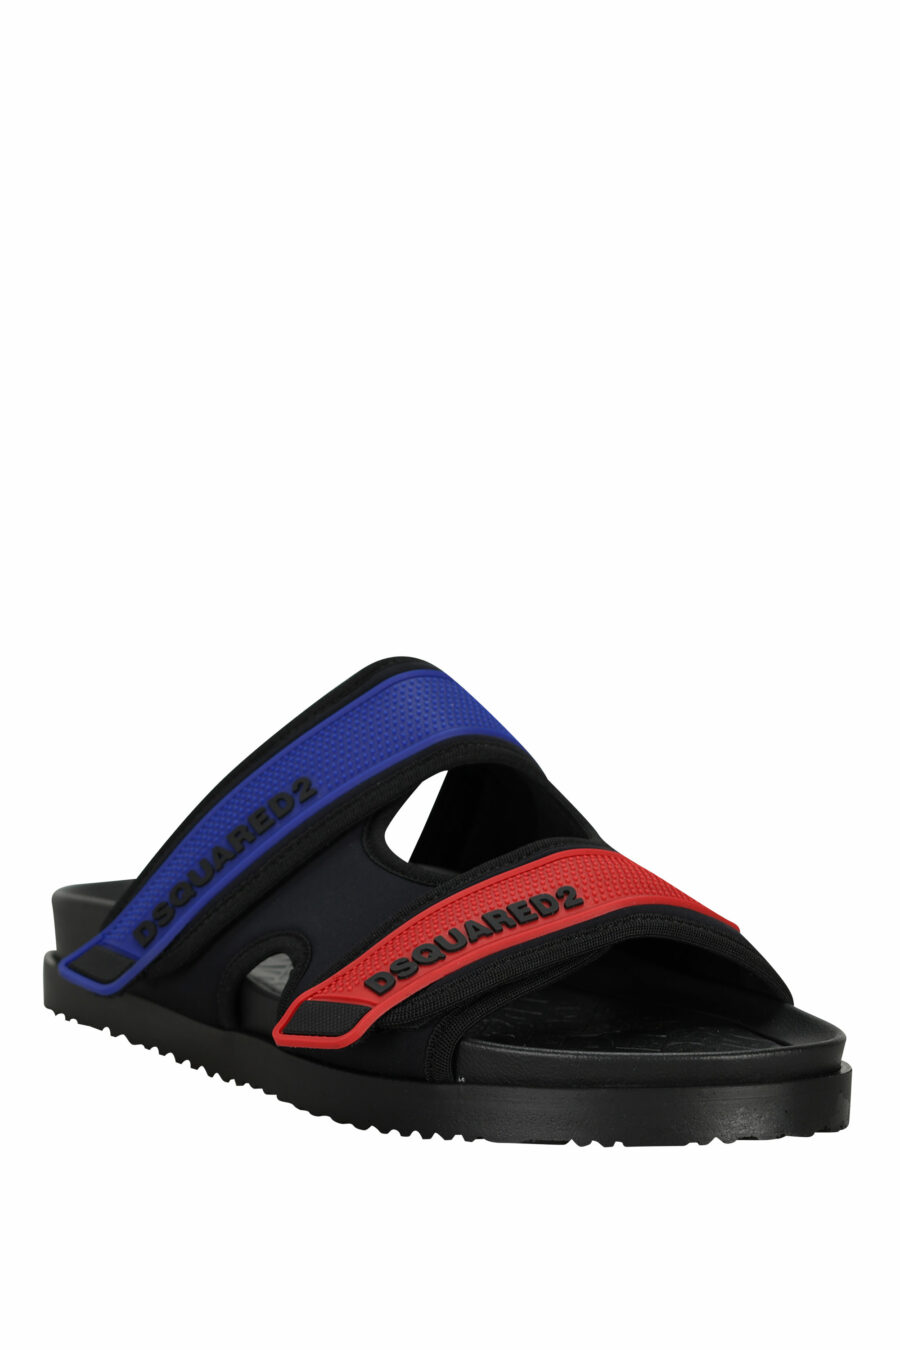 Schwarze Sandalen mit rotem und blauem Klettverschluss - 805777314715 1